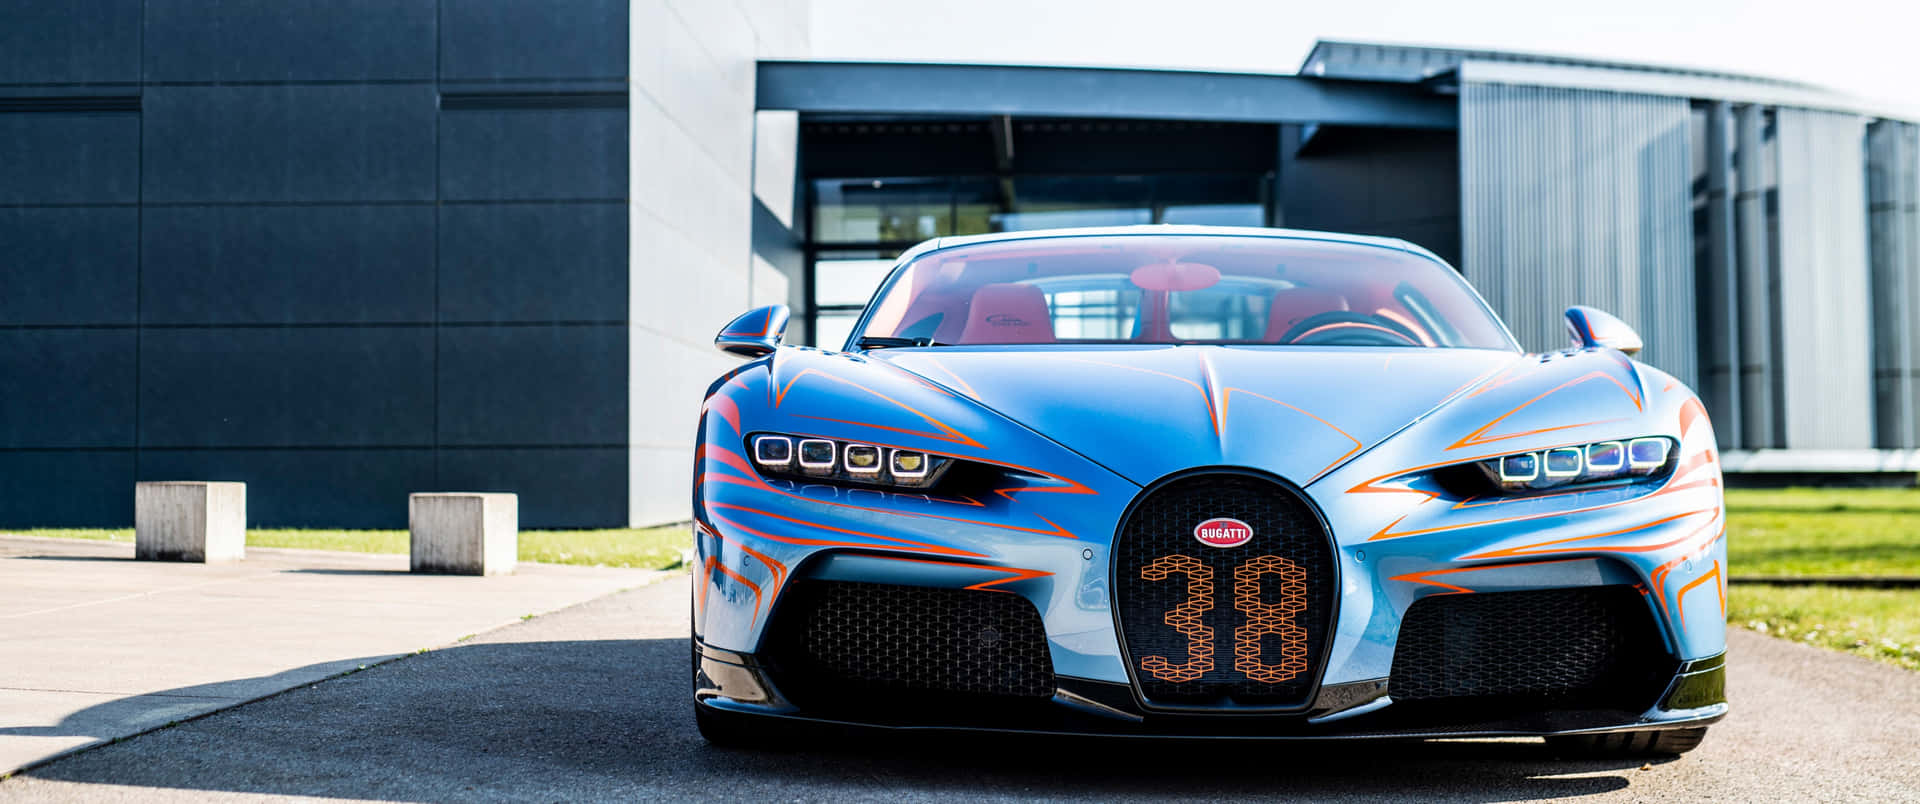 Corrapara O Futuro Com O Carro Bugatti Em Seu Papel De Parede De Computador Ou Celular. Papel de Parede